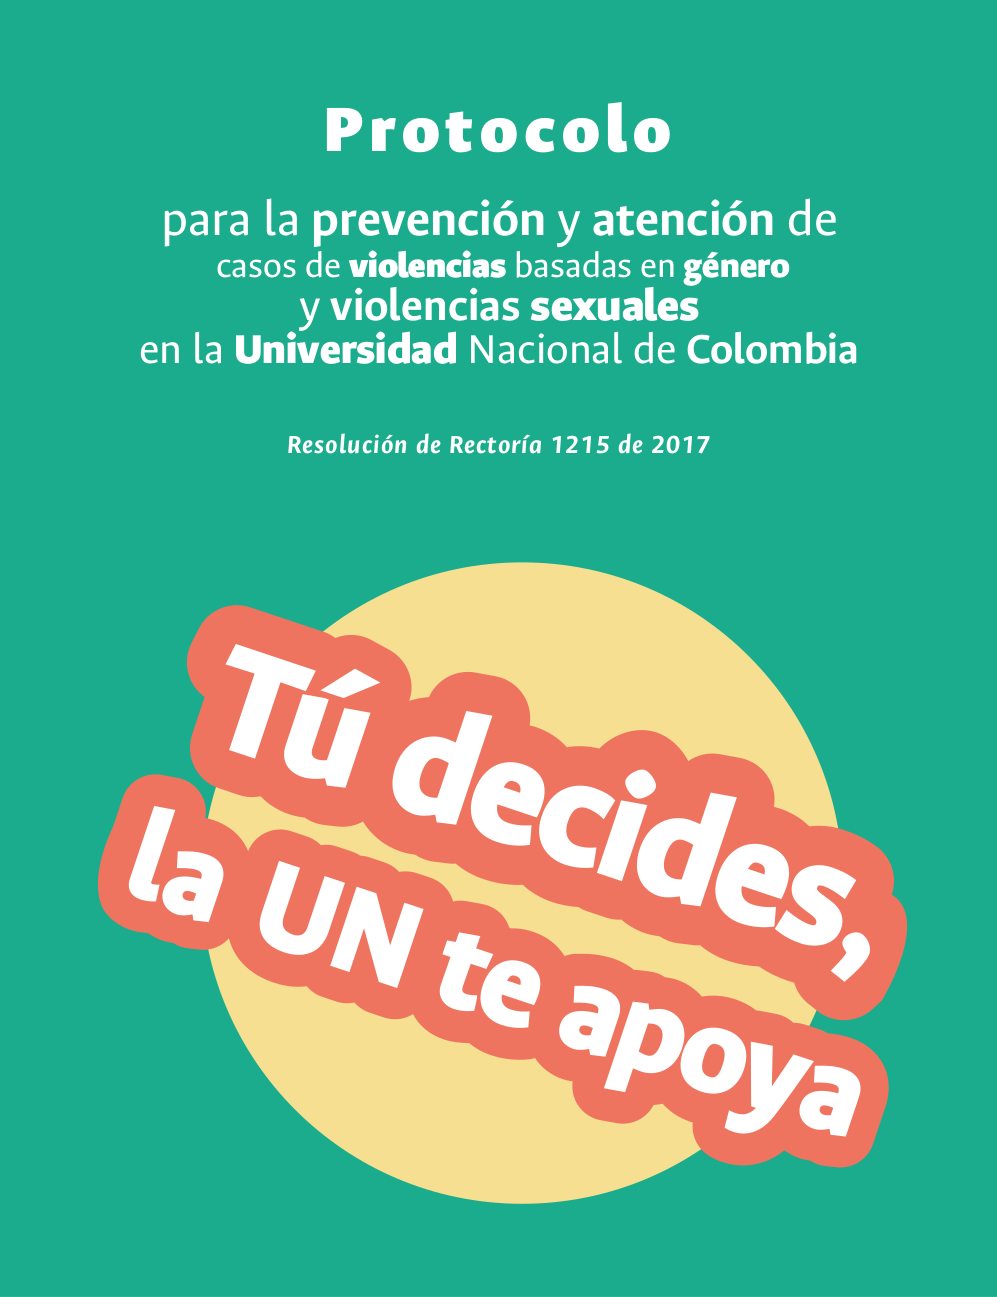 Protocolo para la prevención y atención de casos de violencias basadas en género y violencias sexuales en la Universidad Nacional de Colombia